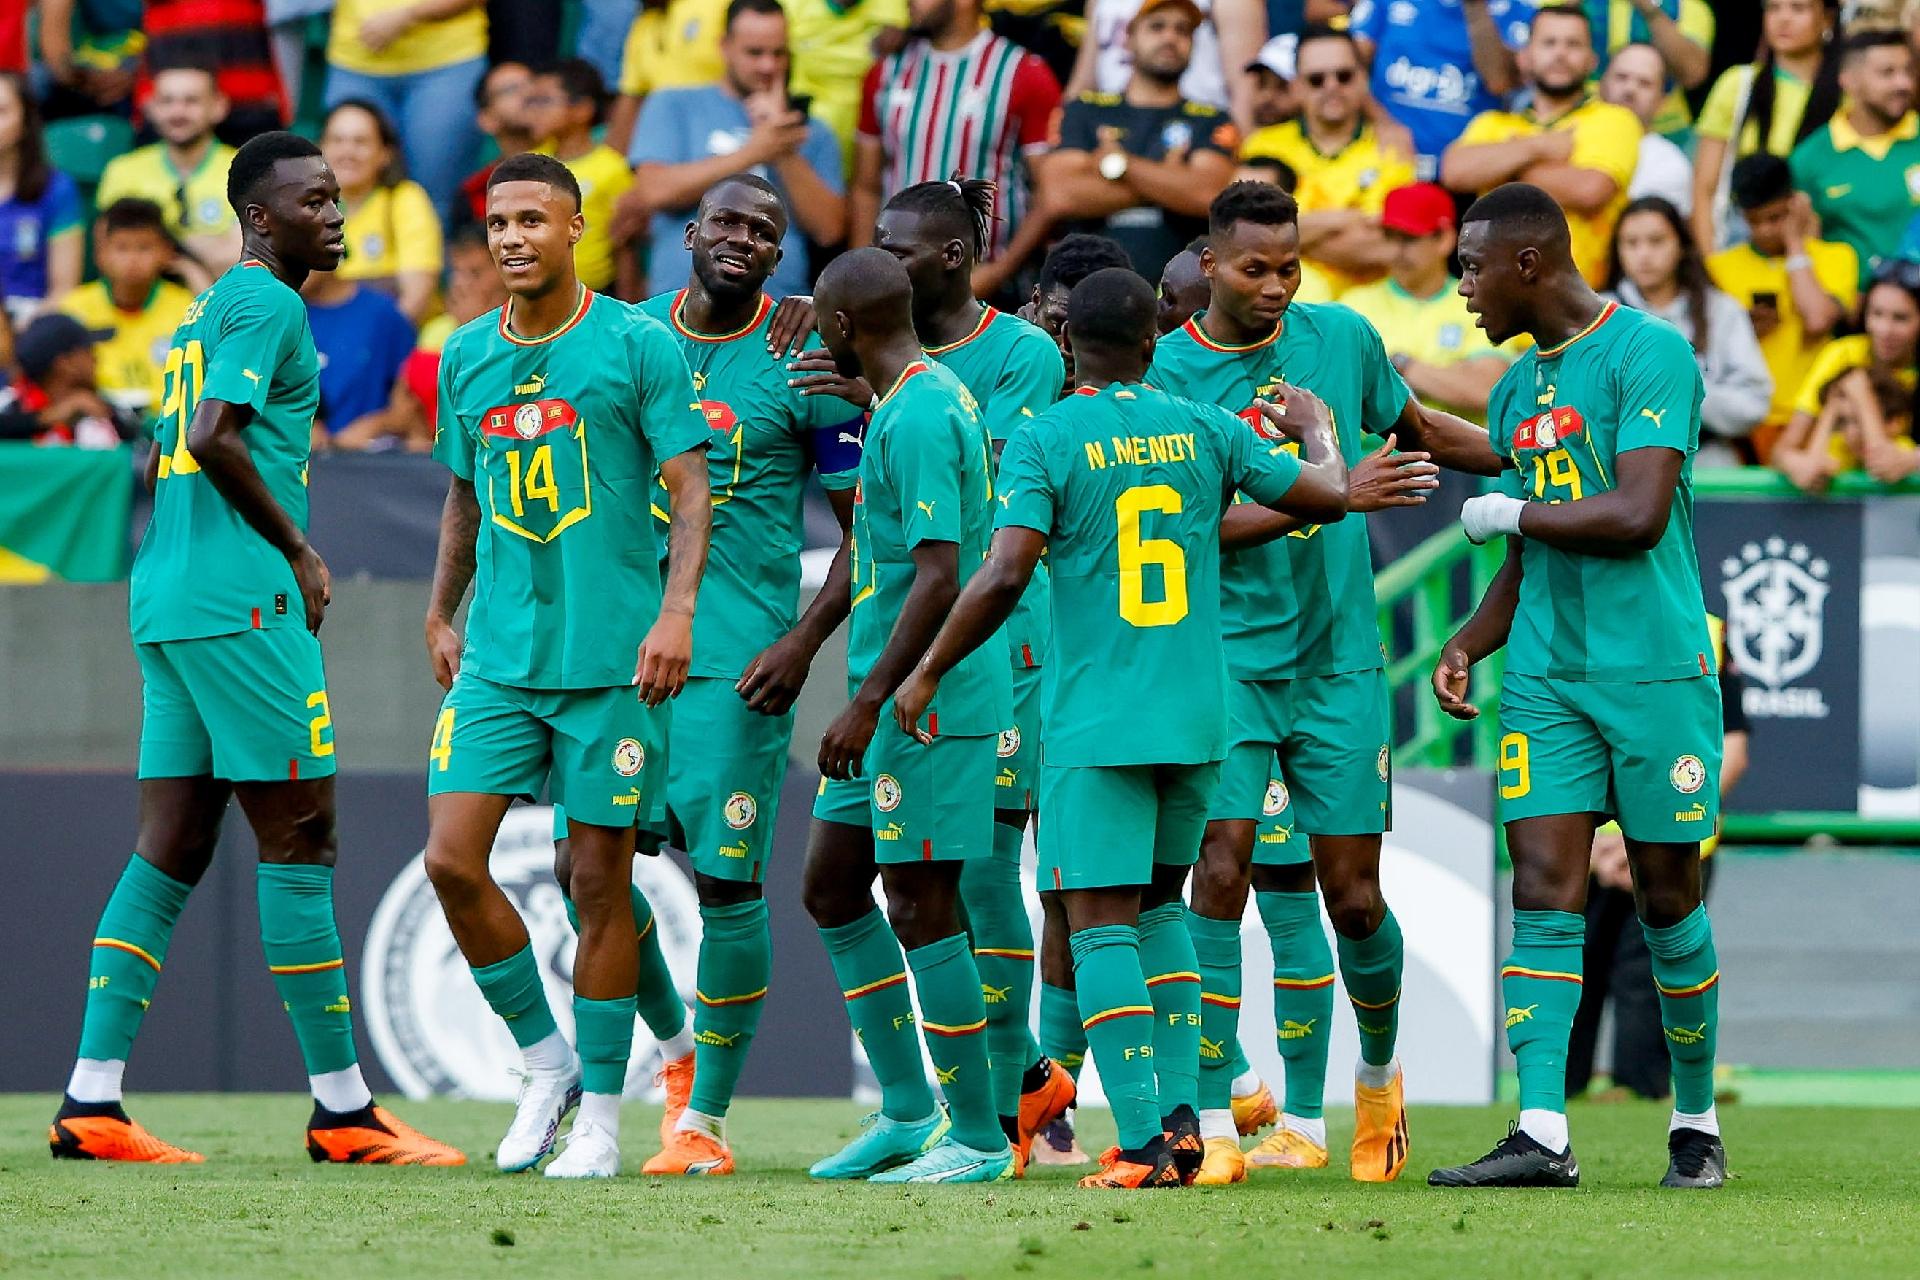 Gols e melhores momentos de Brasil x Senegal pelo Amistoso (2-4